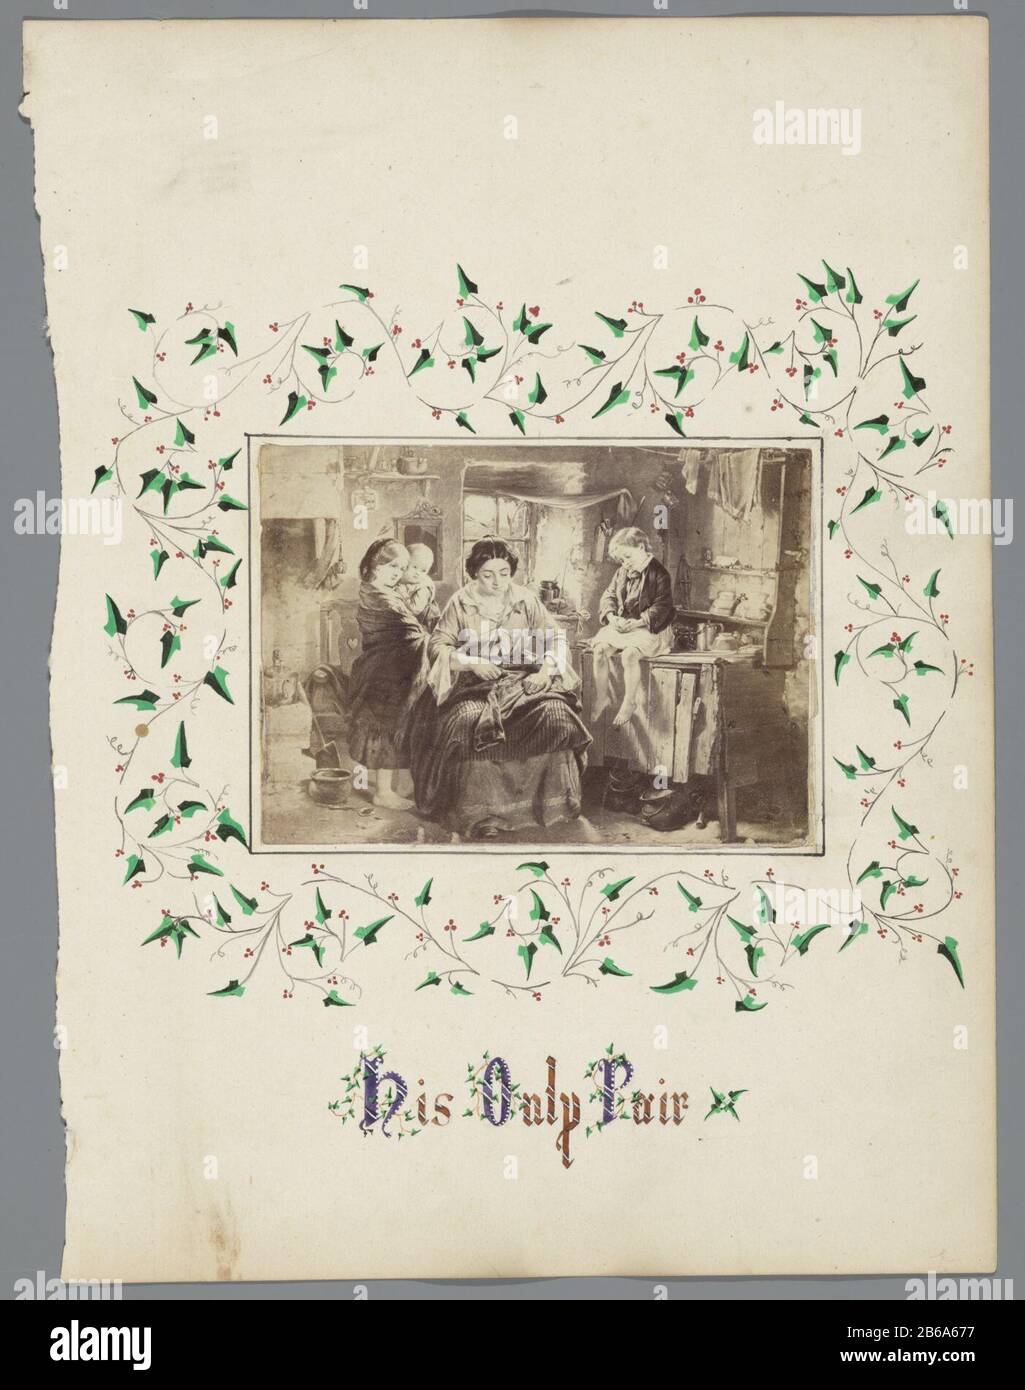 Albumblad Seine einzige Albumseite (Titel op object) mit Fotos des Gemäldes  mit dem Titel "Sein einziges Paar", die einen Jungen darstellt, der: NS- Hosen wiederhergestellt hat. Mit Weinreben mit Beeren und Blättern  dekoriert.